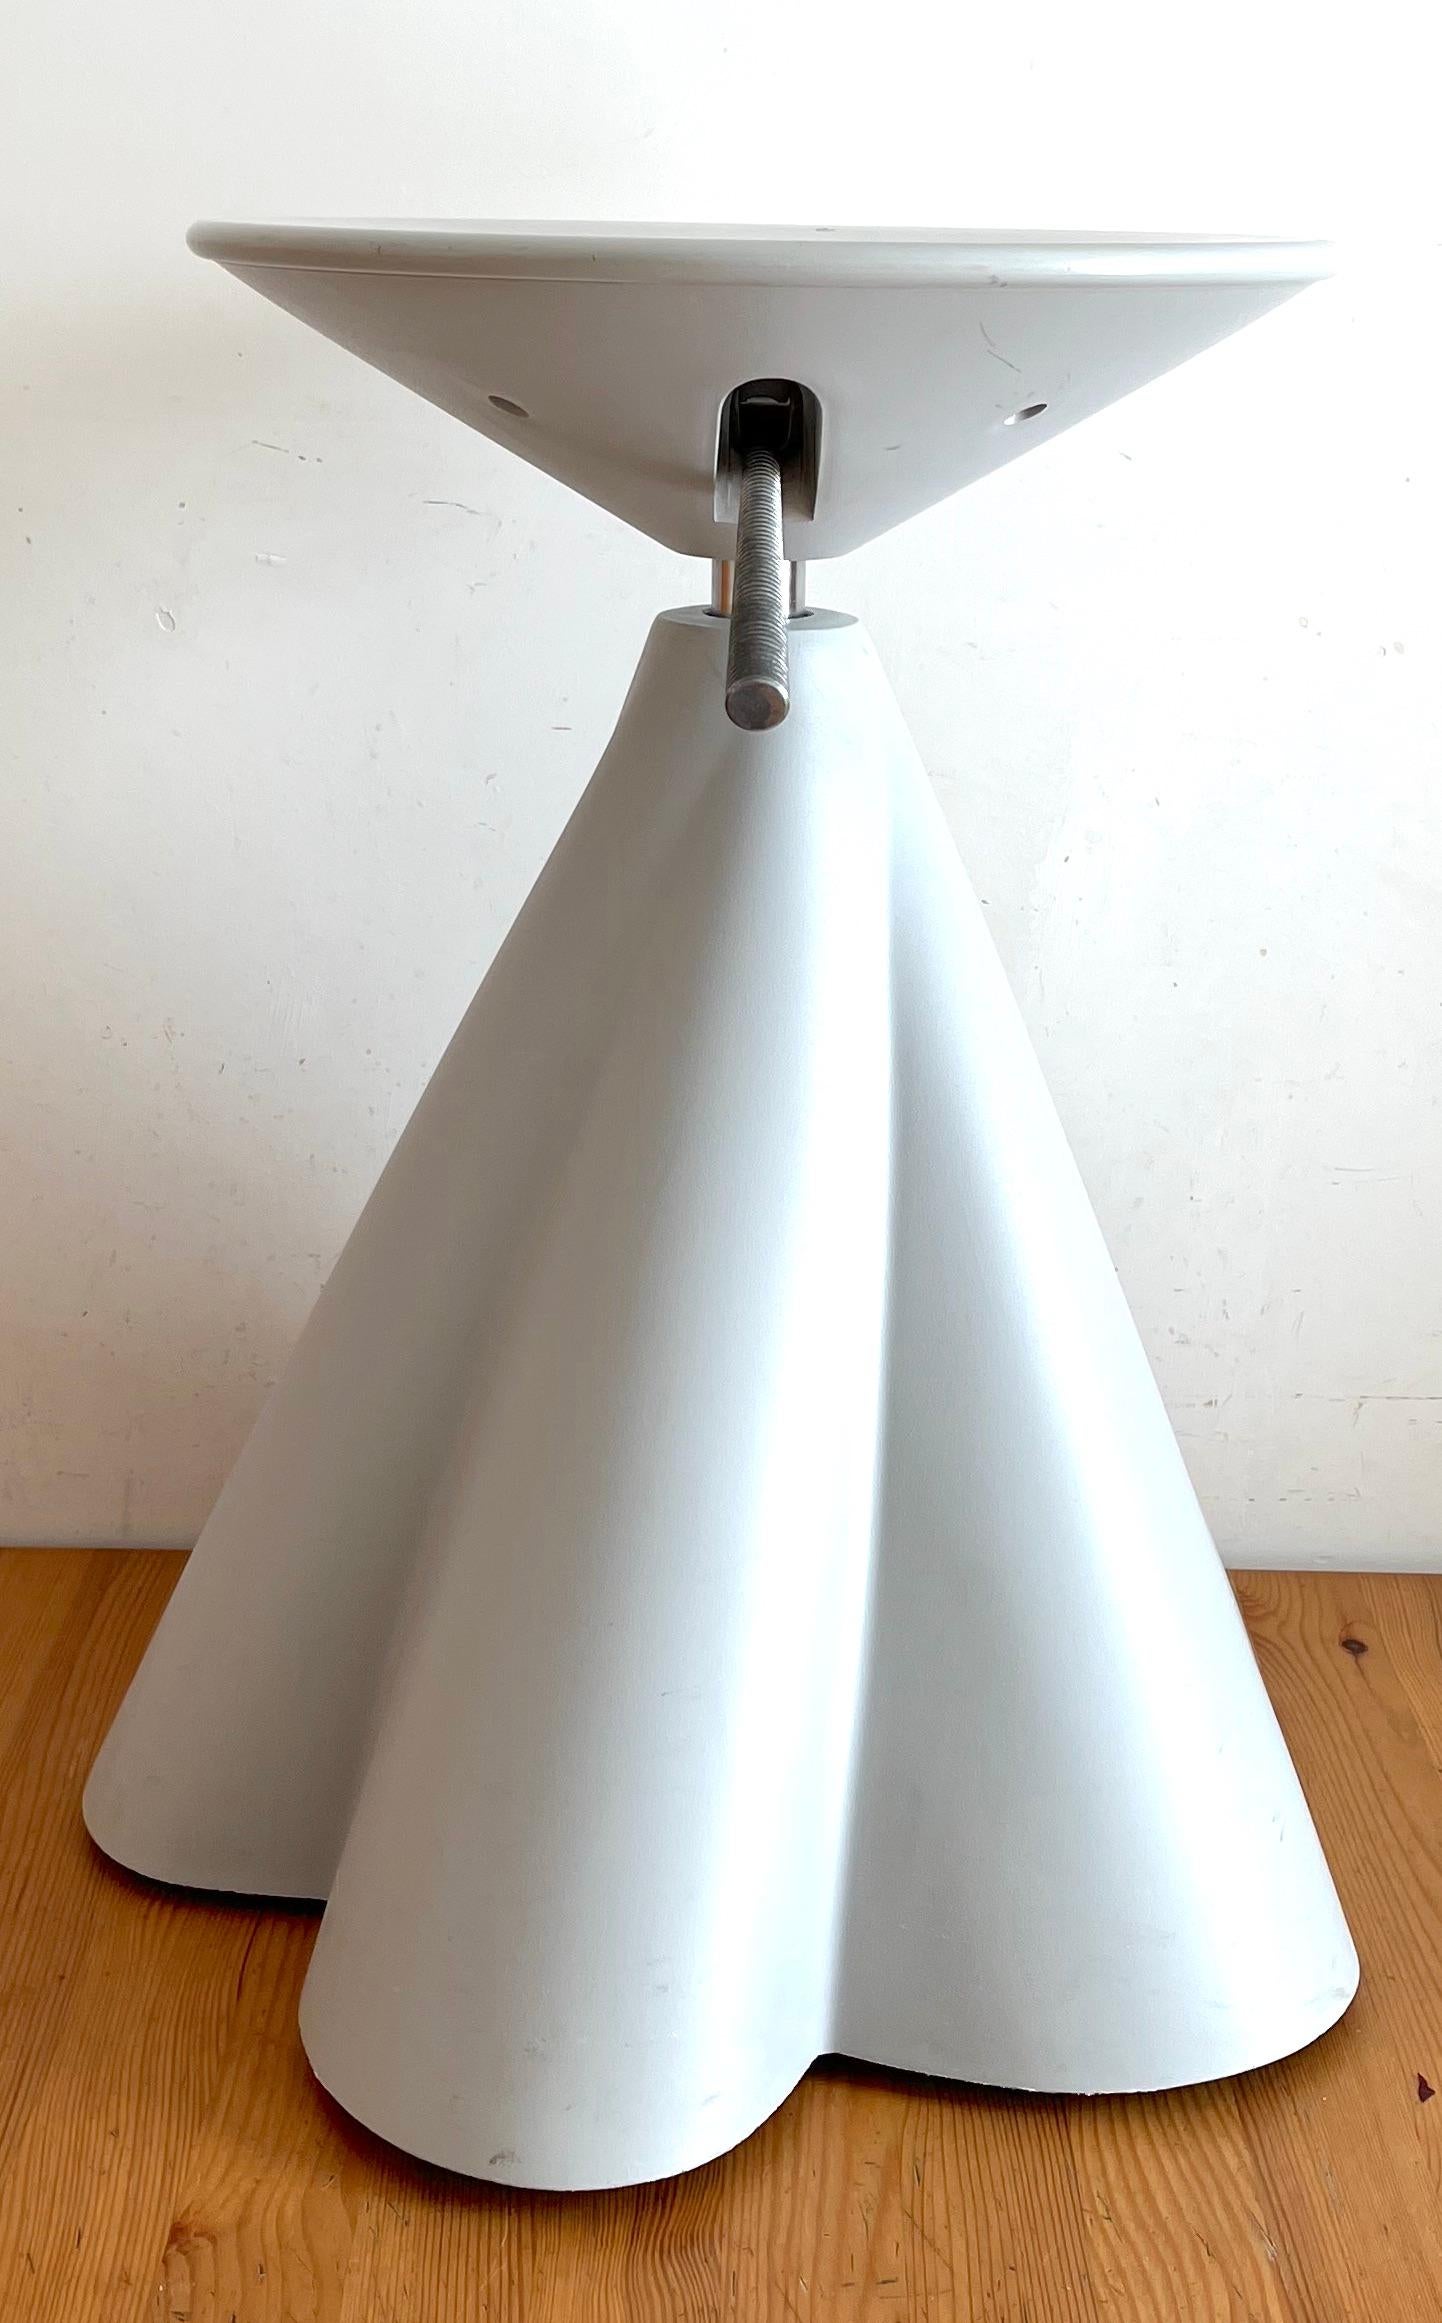 Raro sgabello girevole di Philippe Starck per Presence Paris / L'Oréal  
Sgabello molto raro e attraente è stato progettato da Philippe Starck nel 1989 per Presence Paris / L'Oréal.  
Sgabello postmoderno è realizzato in plastica grigio chiaro, con